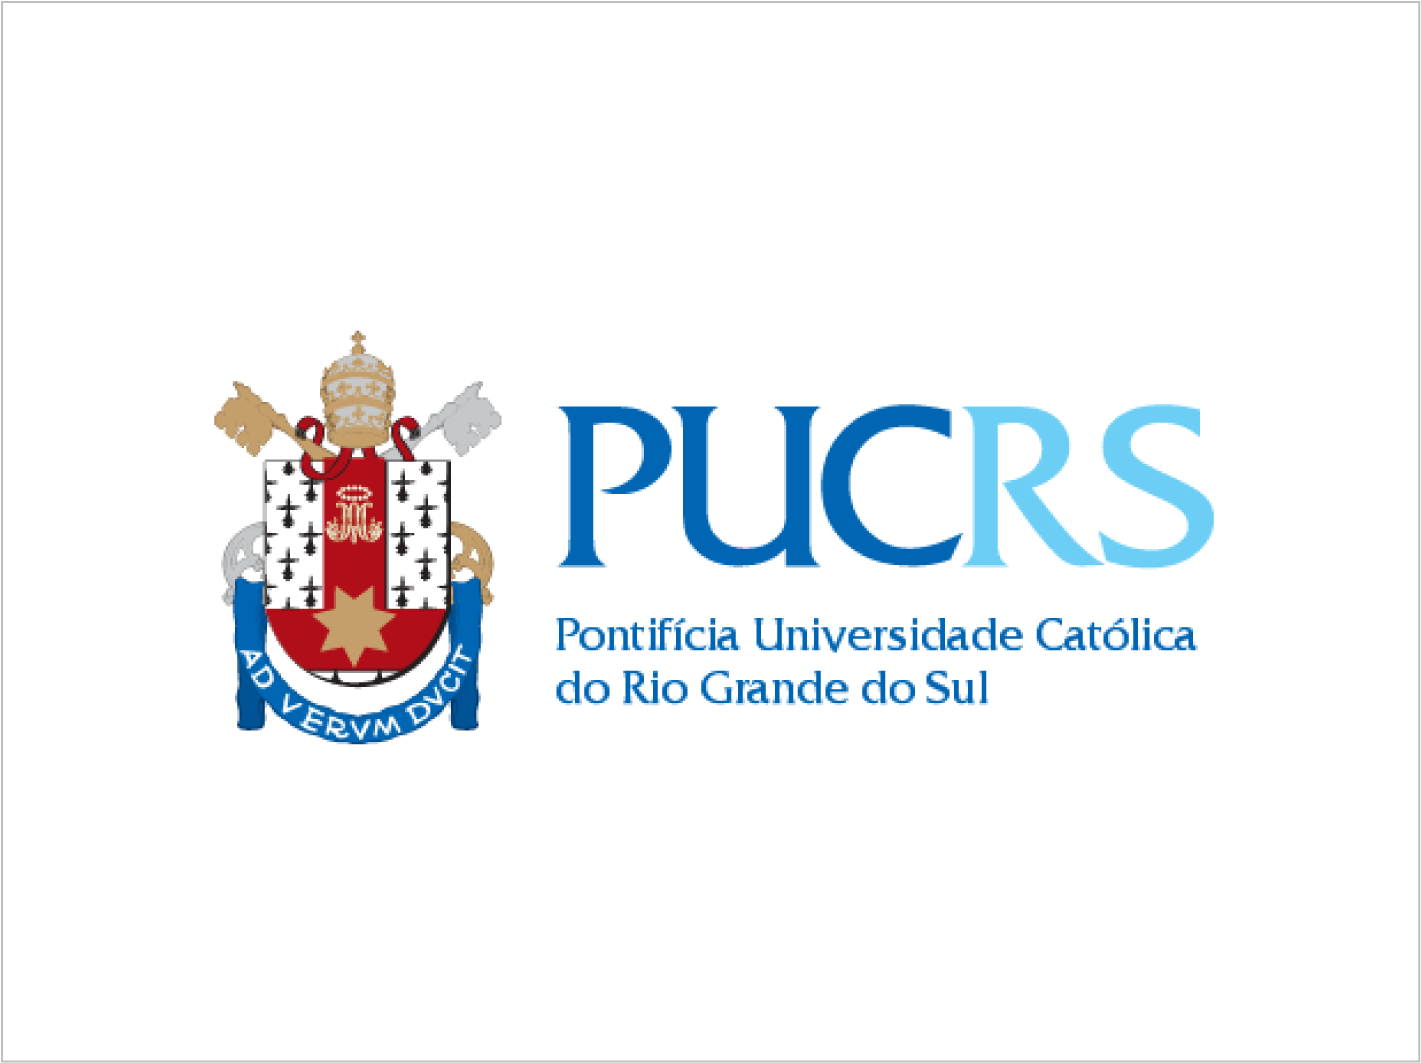 Pontificia universidade catolica do Rio Grande